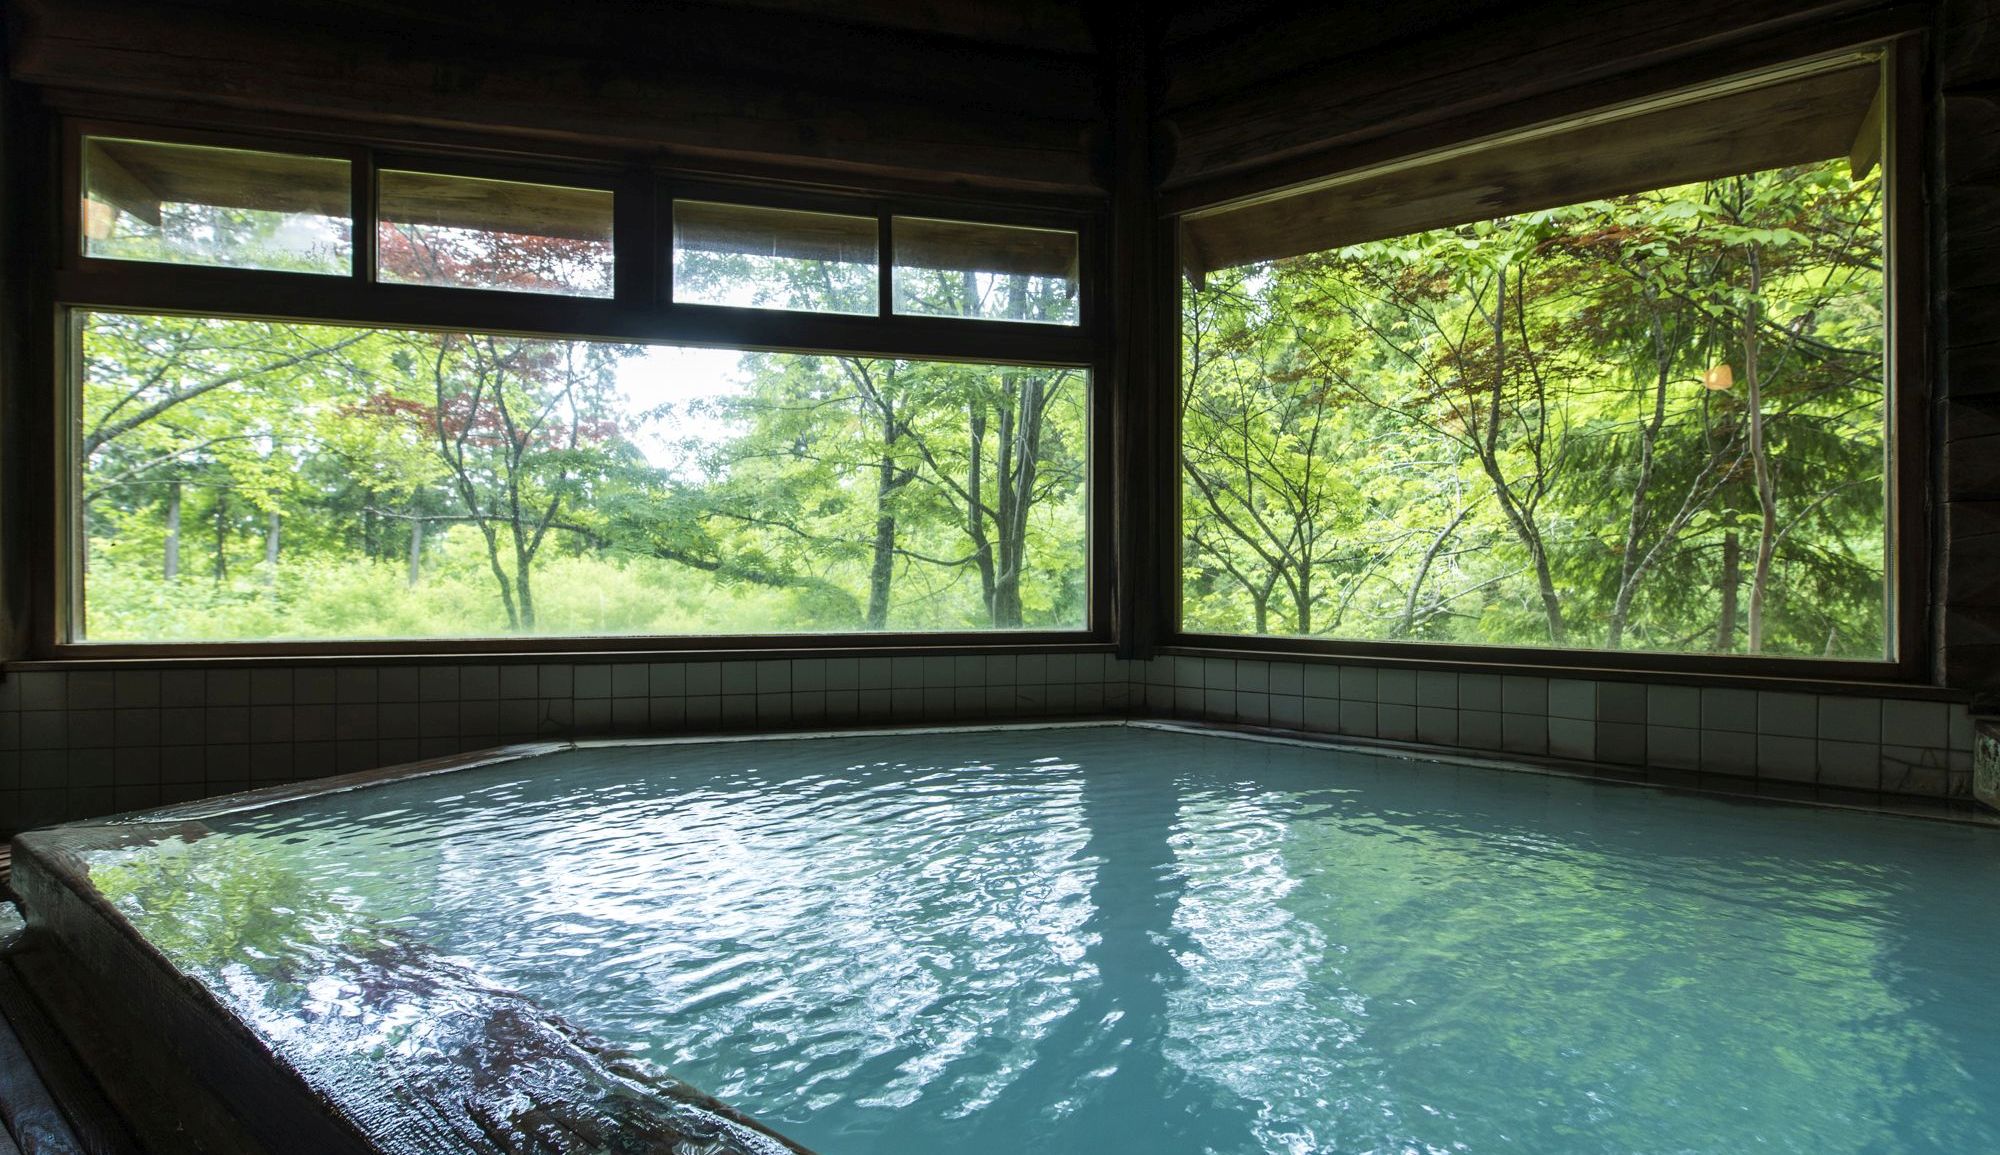 【丸太造りの温泉浴場】ほとんどが木造、野趣あふれる雰囲気を味わえる♪古き良き湯治場風情を残した内風呂